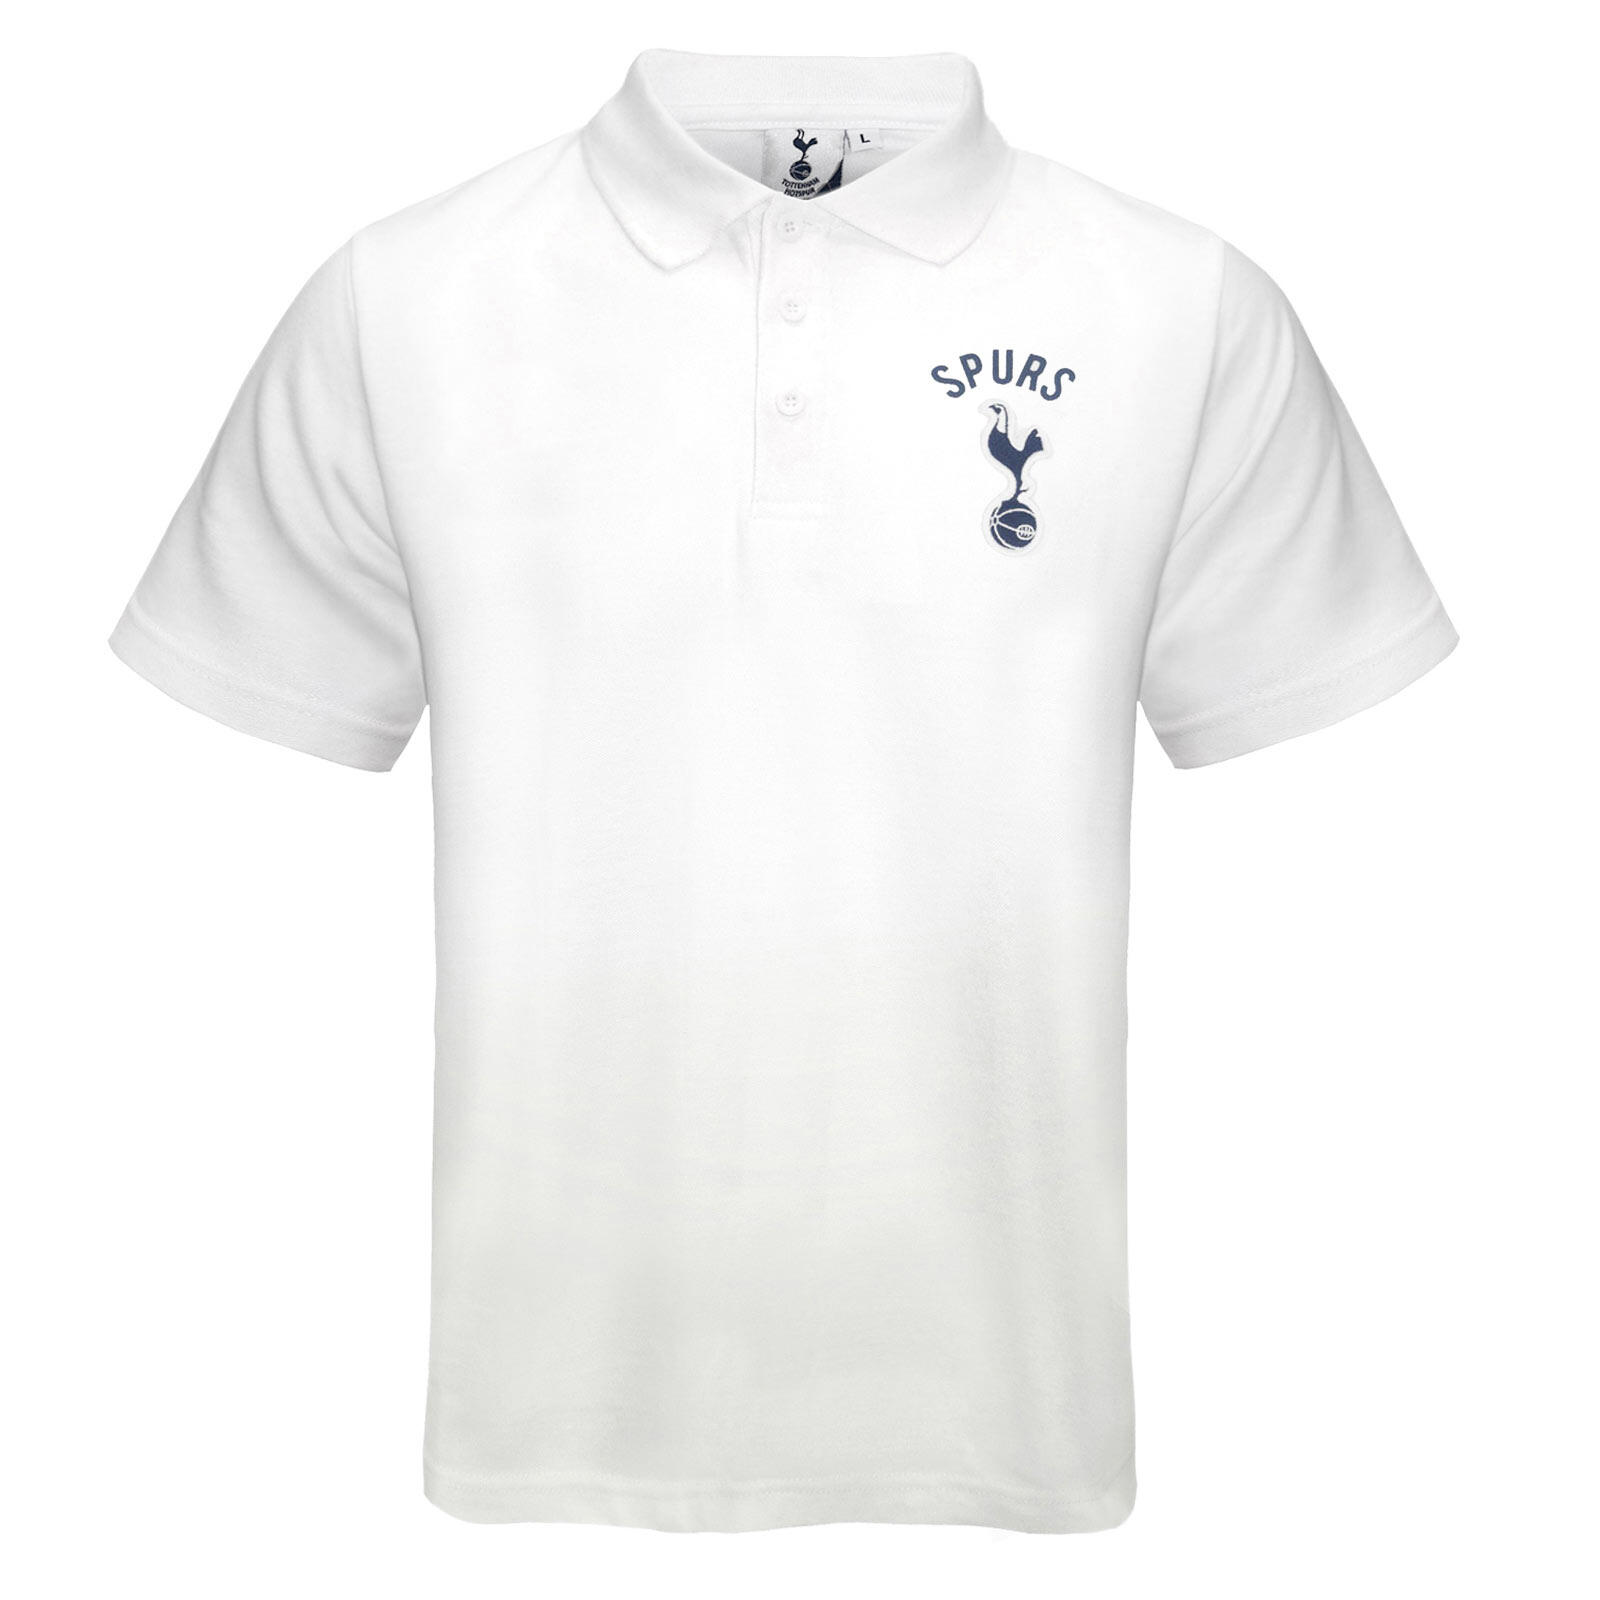 TOTTENHAM HOTSPUR Tottenham Hotspur Boys Polo Shirt Crest Kids OFFICIAL Football Gift